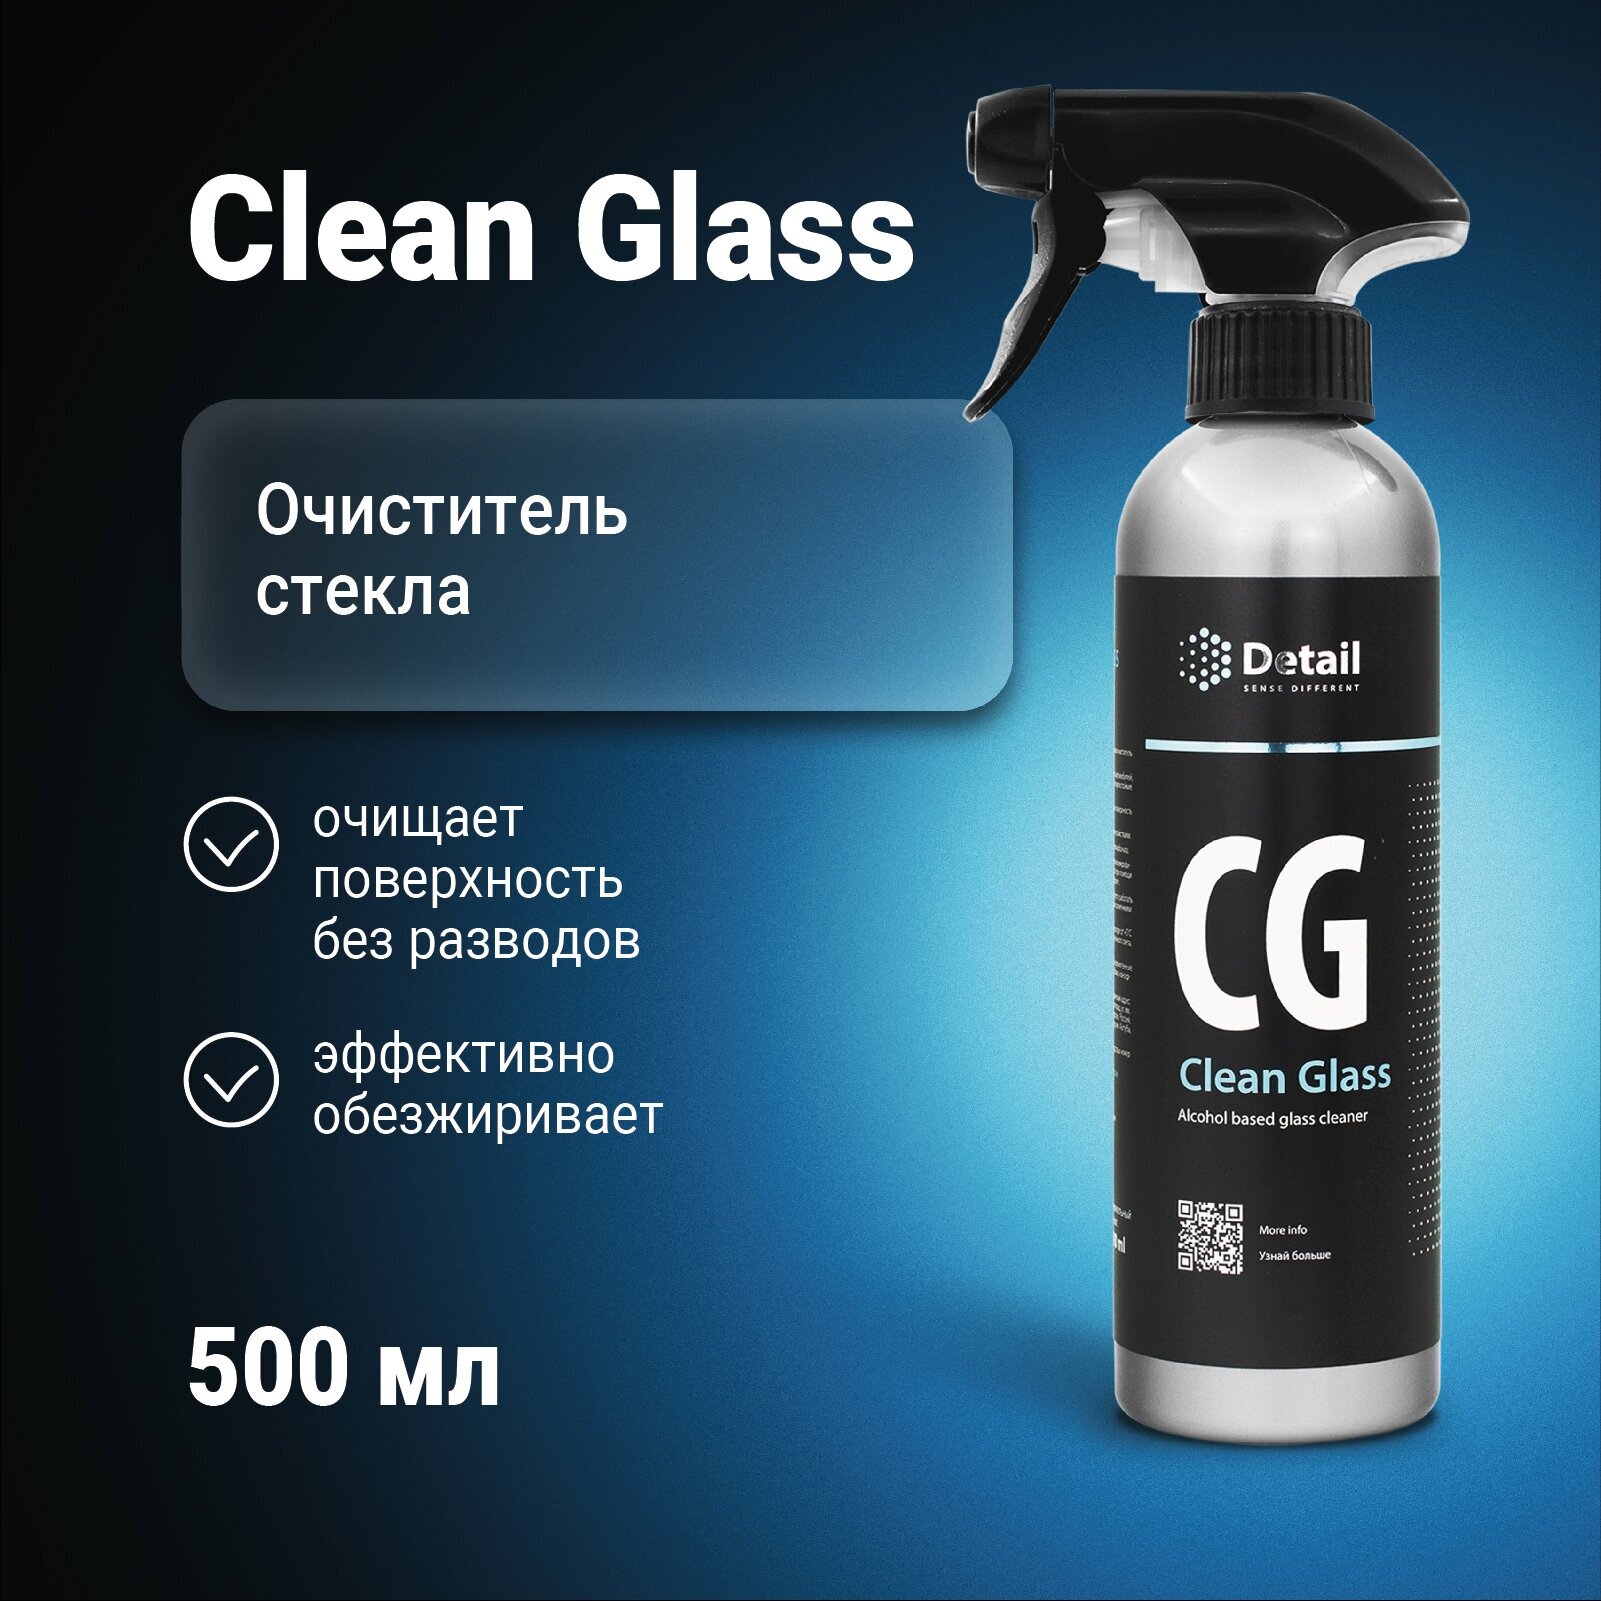 DETAIL Очиститель стекла СG "Clean Glass" 500 мл